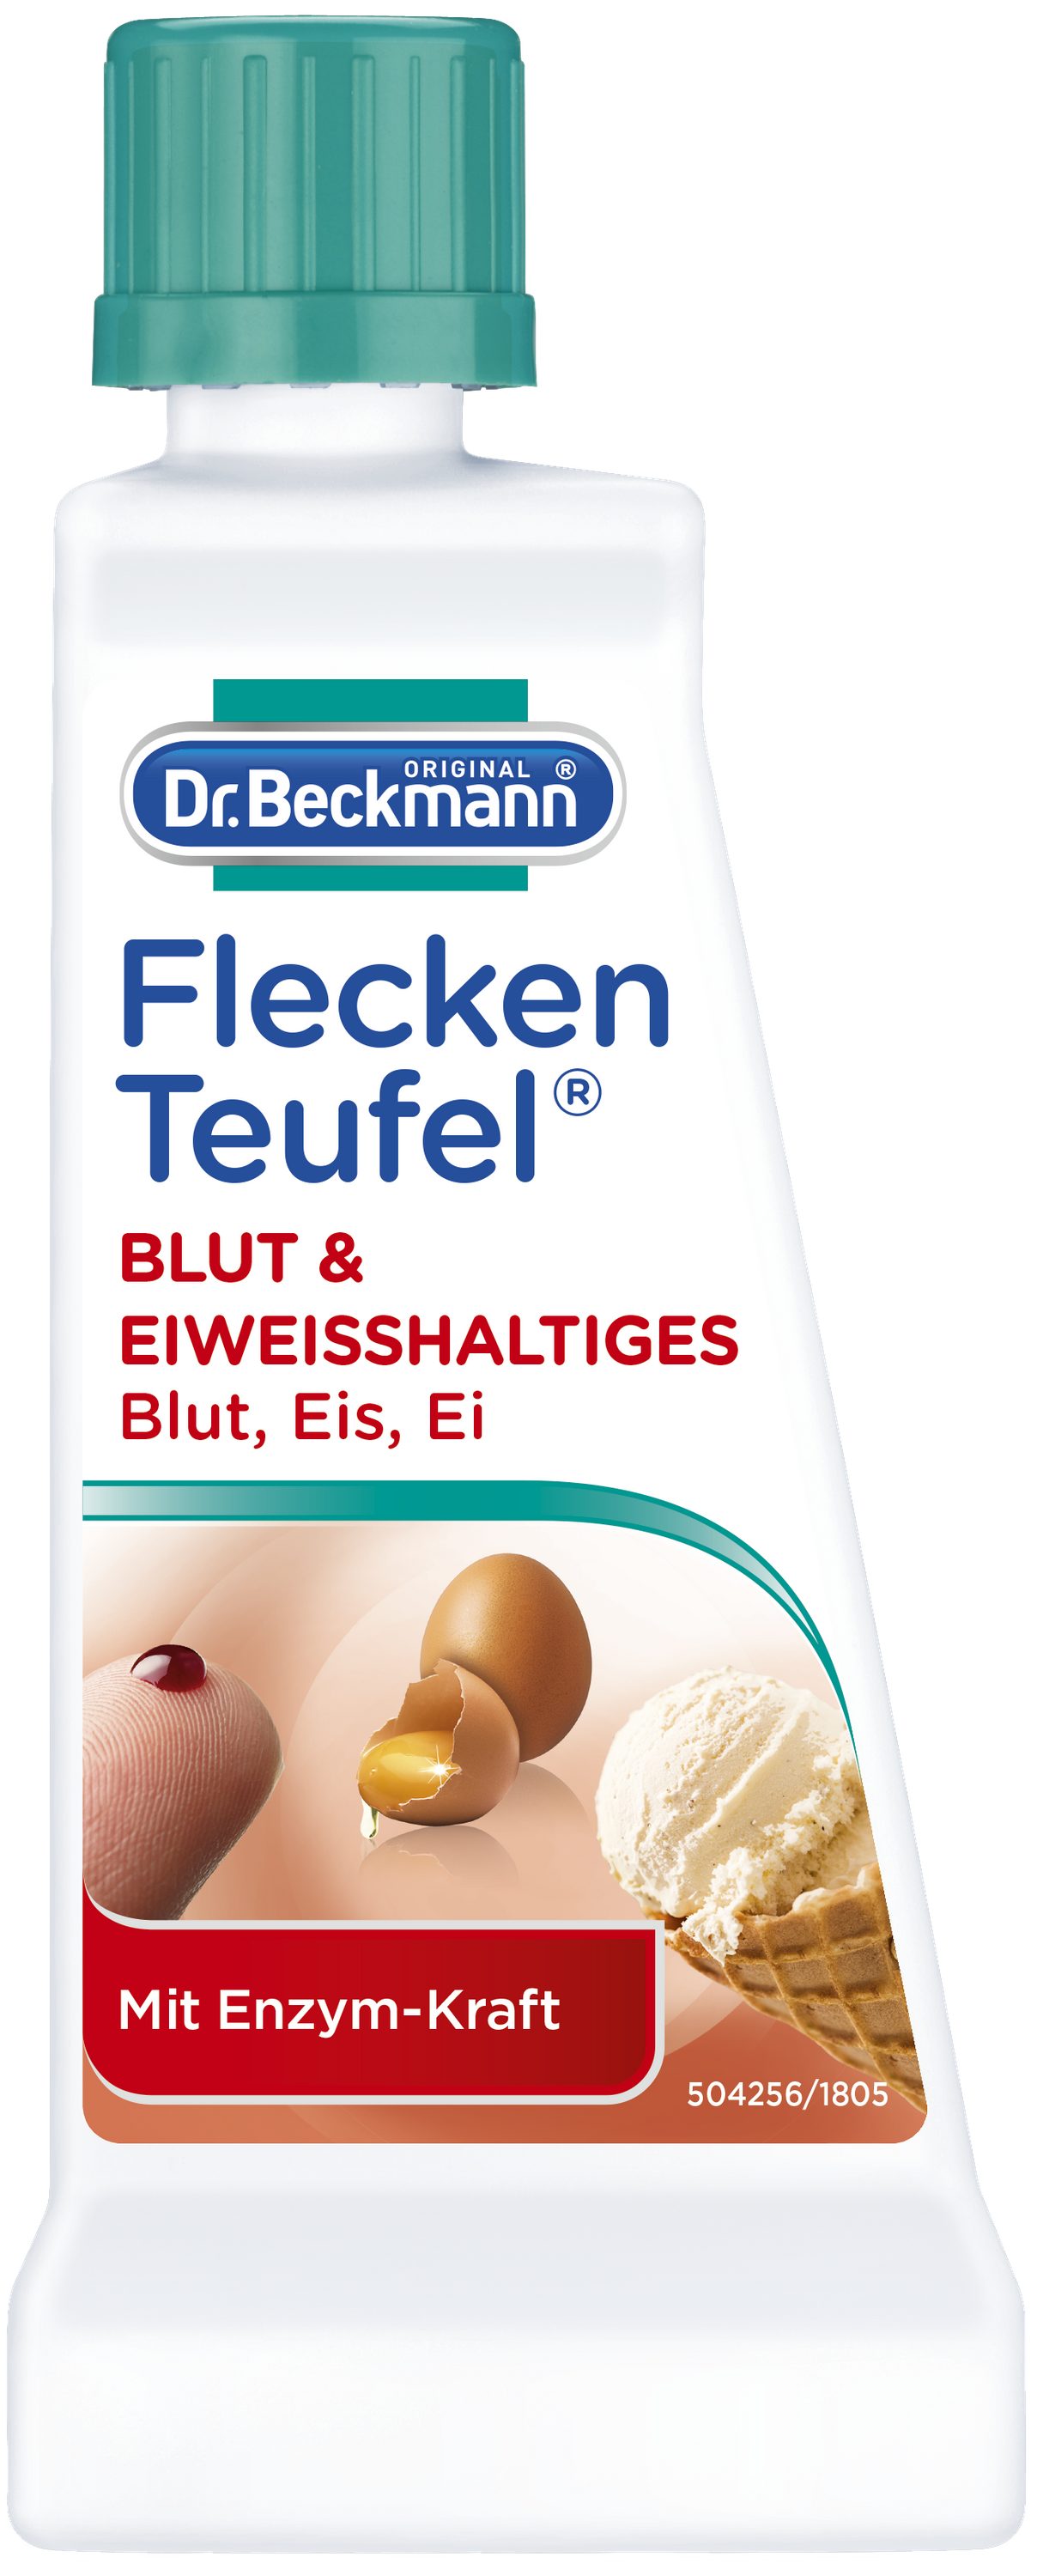 Beckmann ml 6x Dr. Spezialfleckentferner, Fleckenteufel, 50 Polsterreiniger (6-St) Eiweißhaltiges, Blut,